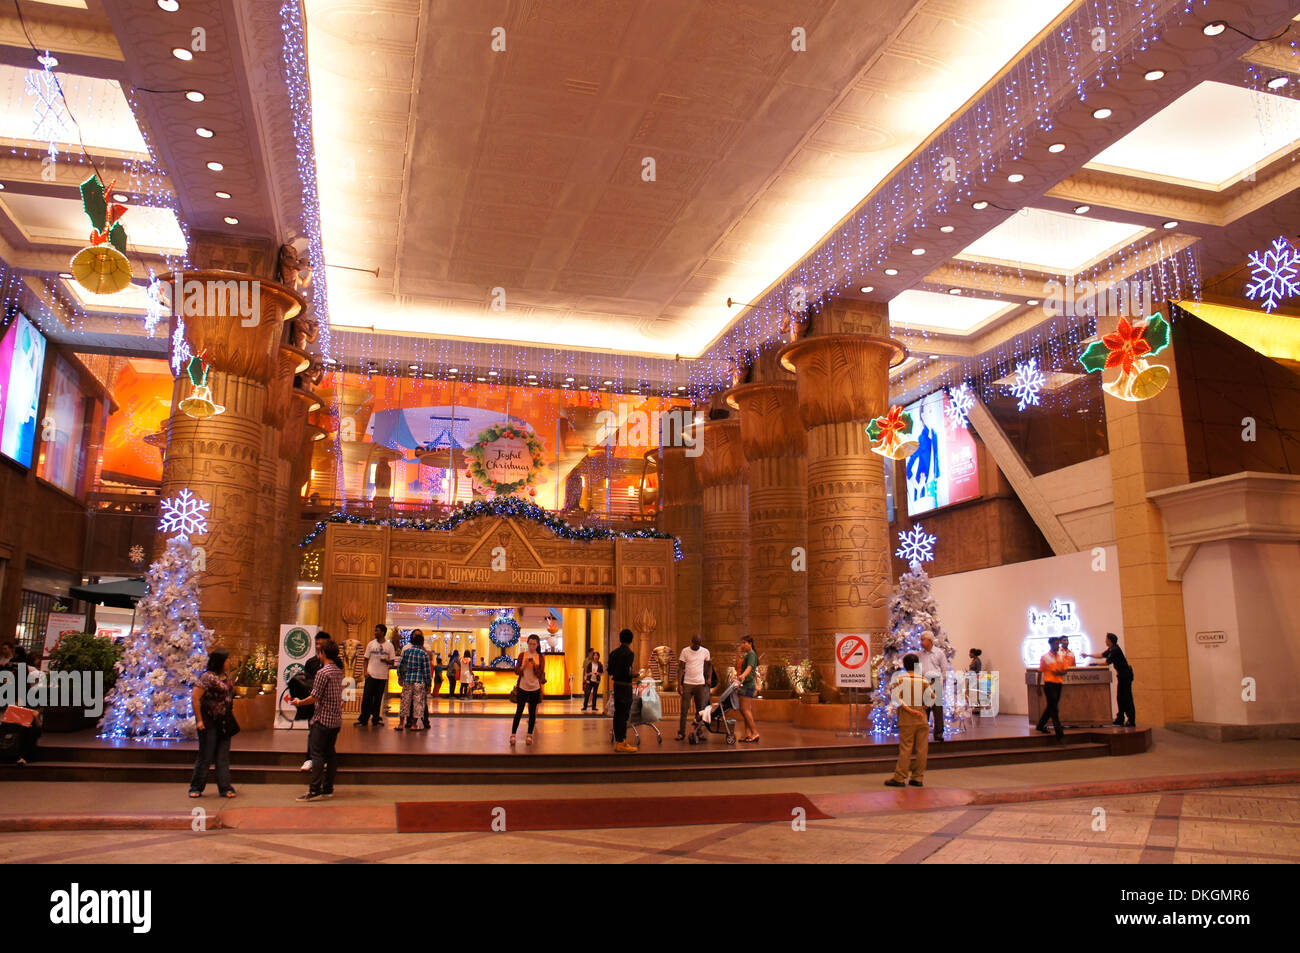 Eingang des Einkaufszentrums Sunway Pyramid, Malaysia Stockfoto